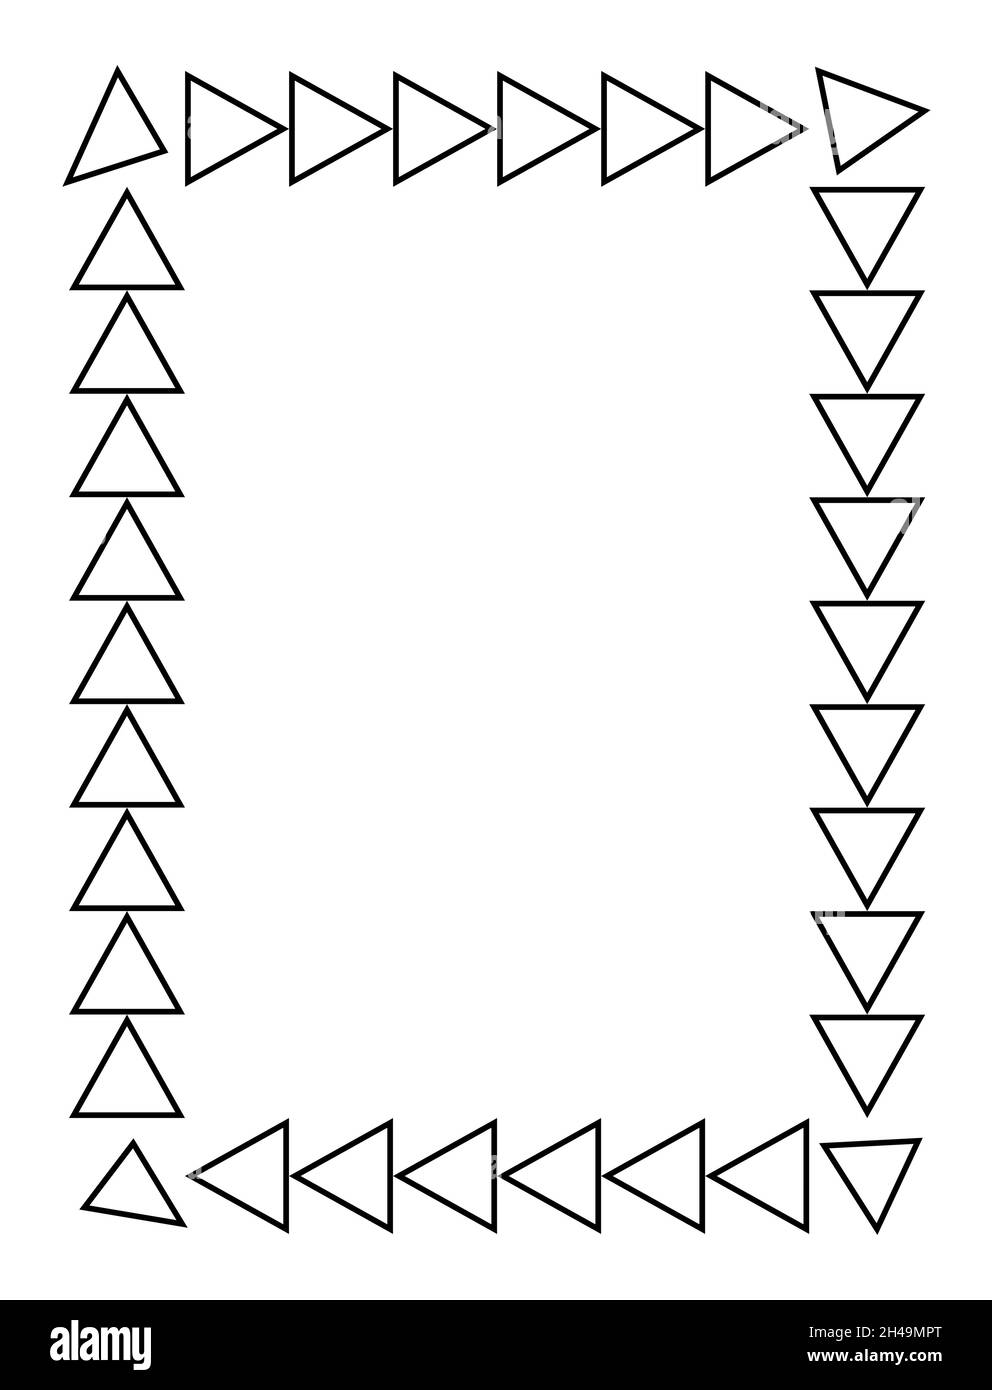 cornice rettangolare nera. Formato A4. Illustrazione vettoriale